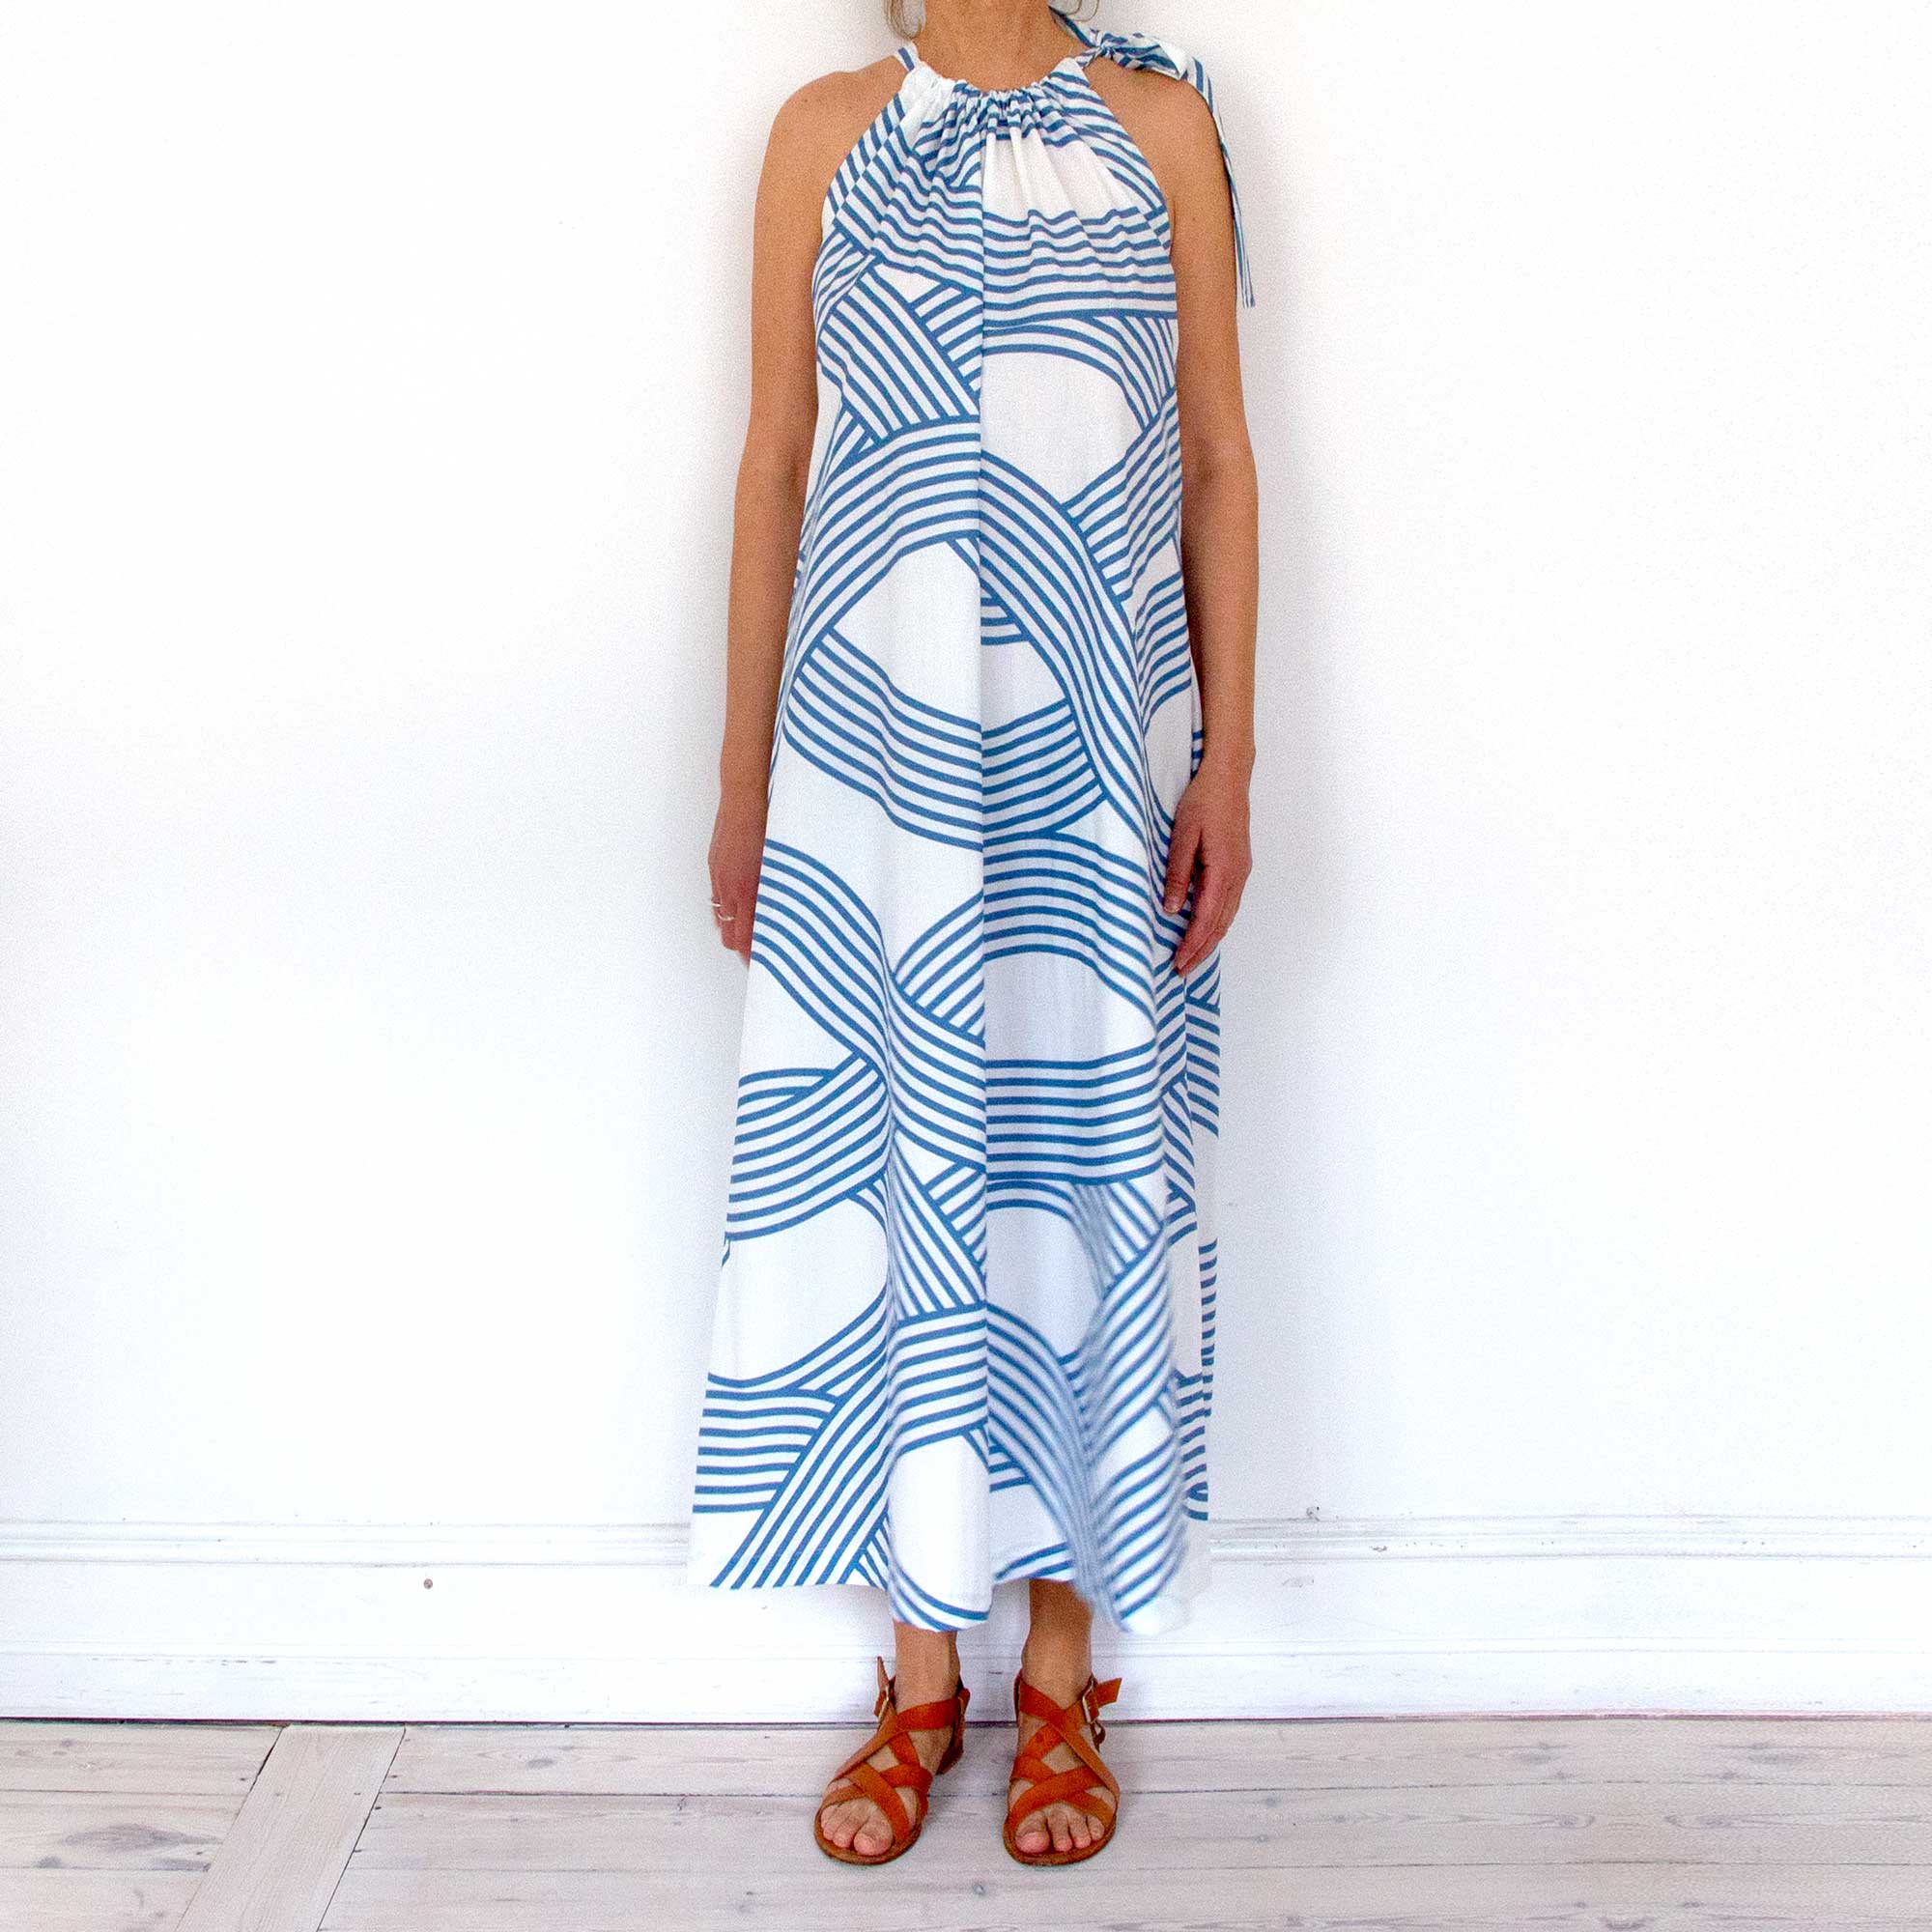 Leh kjole, Oceanblå i økologisk bomuld, trykt i Tyskland syet i Danmark. Design Anne Rosenberg